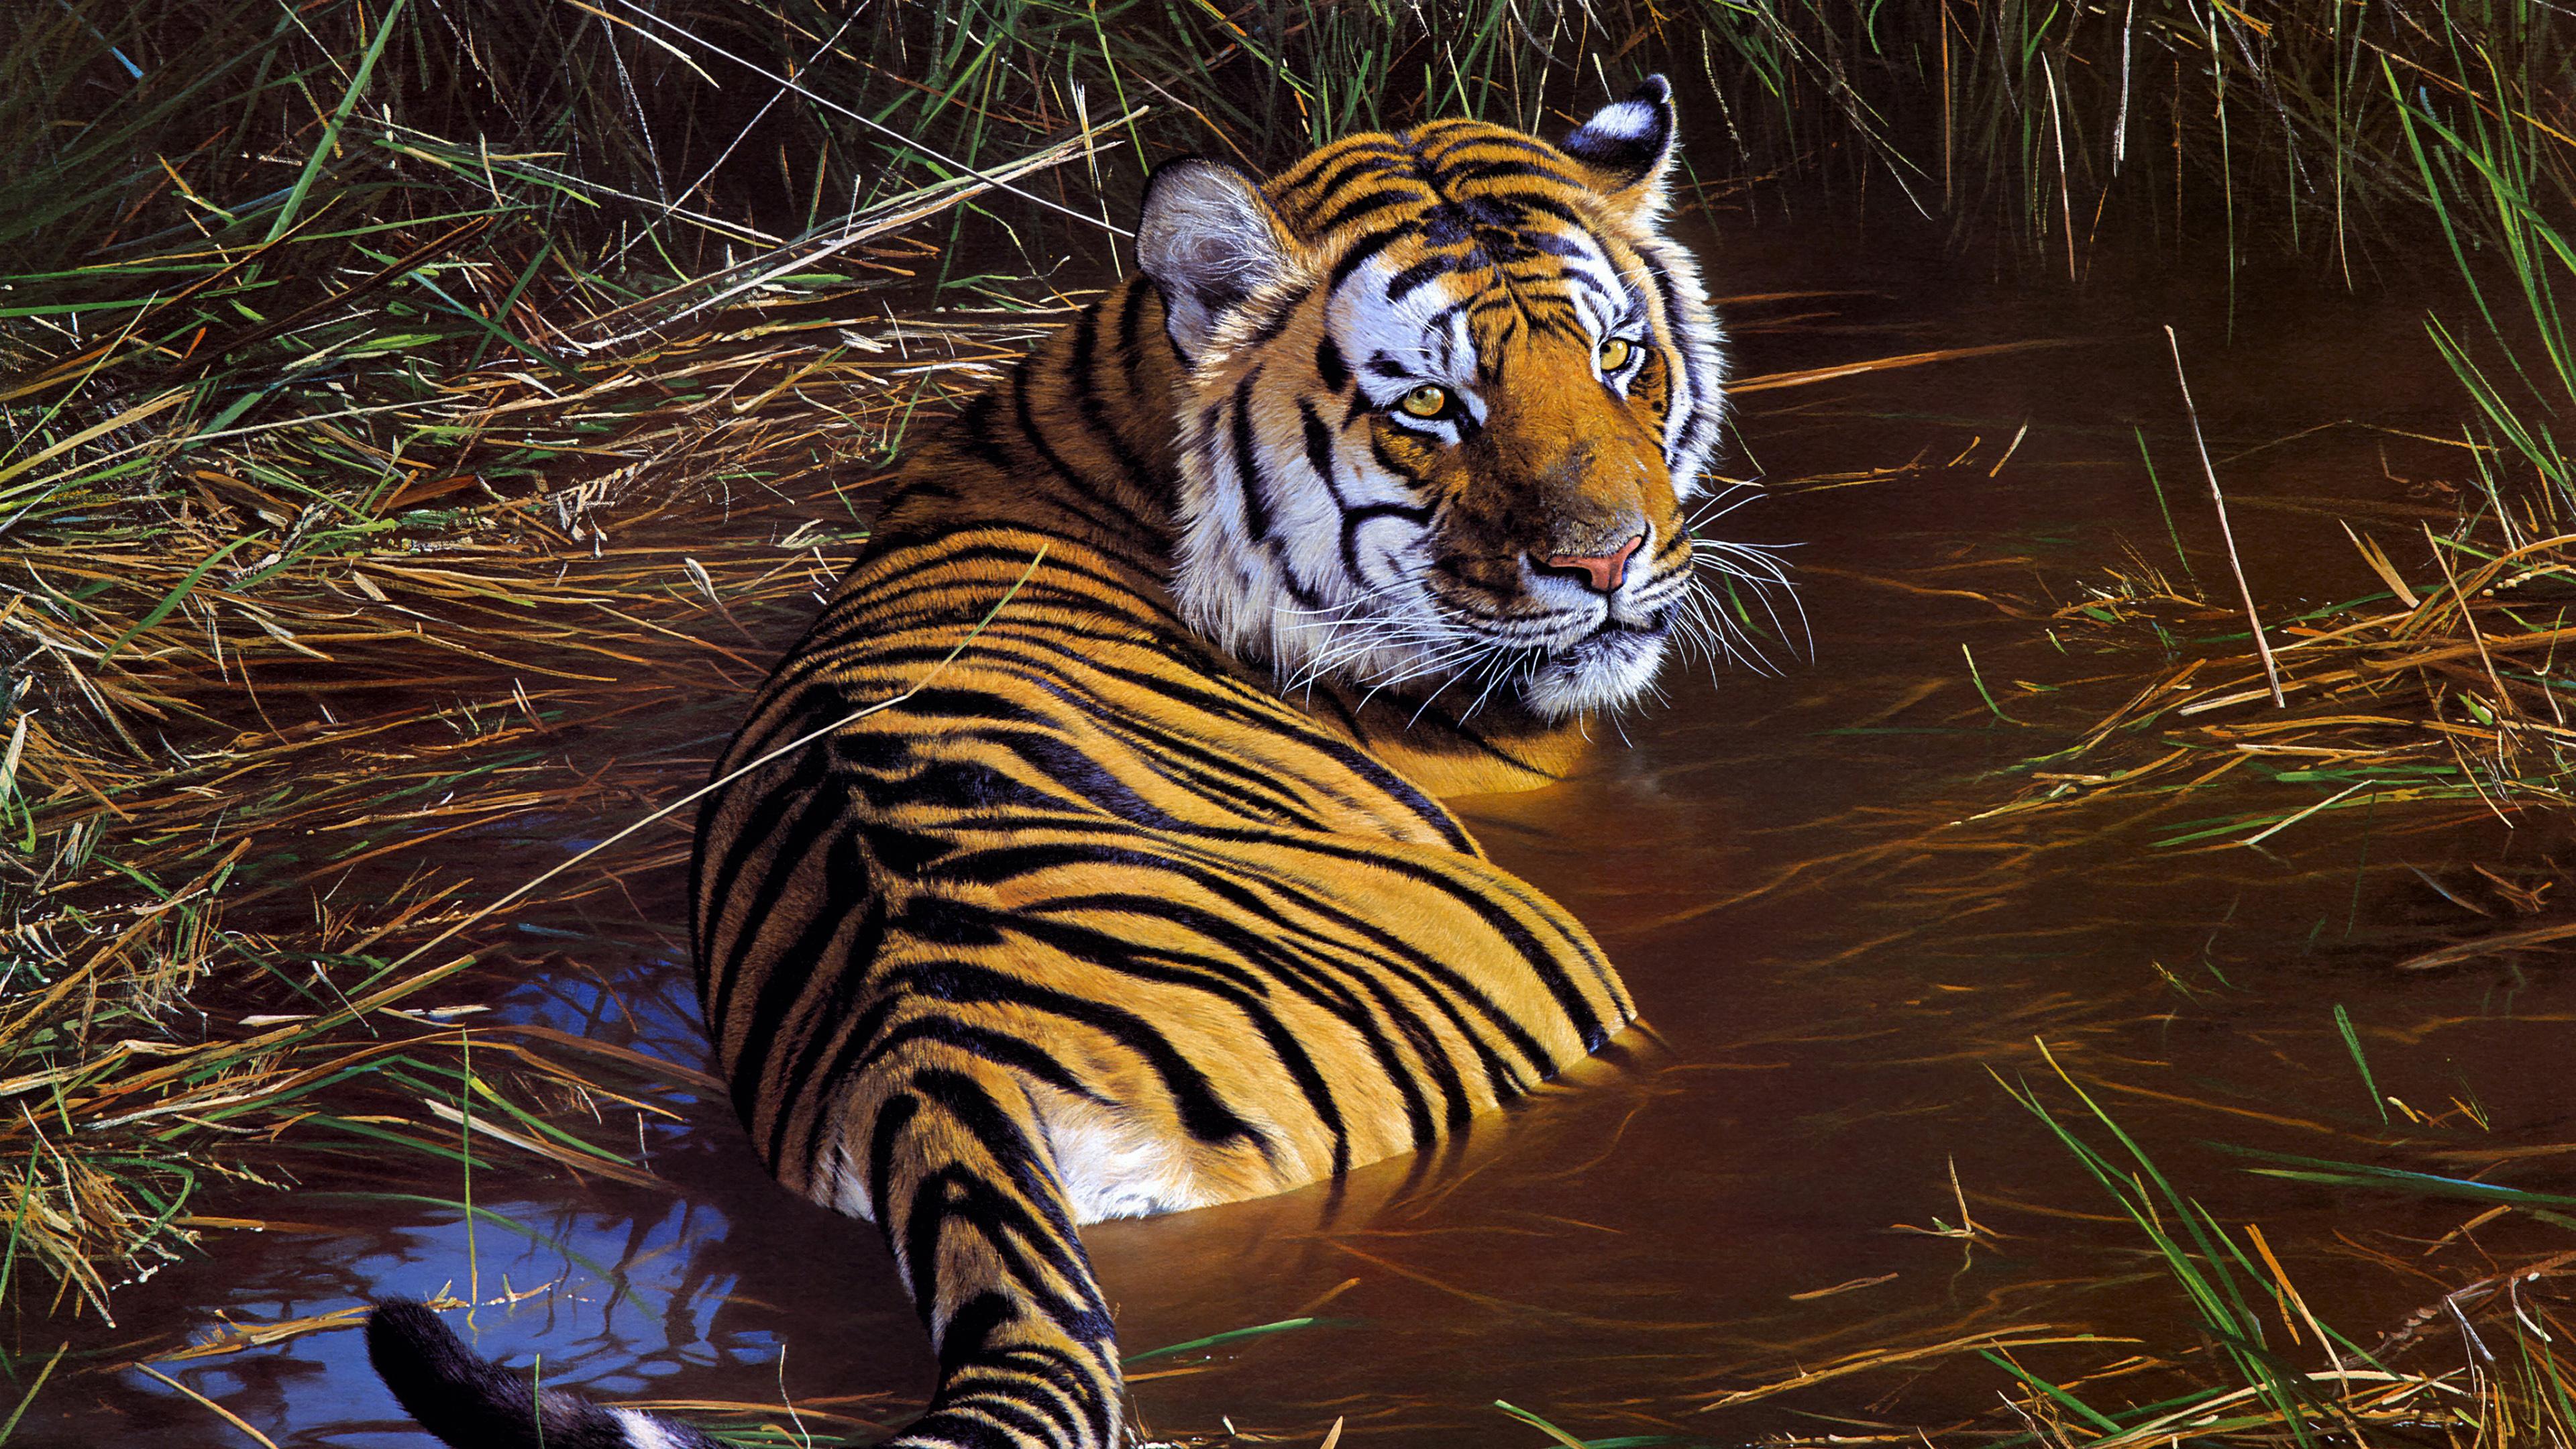 Tiger Wildlife Artwork 4K Wallpaper